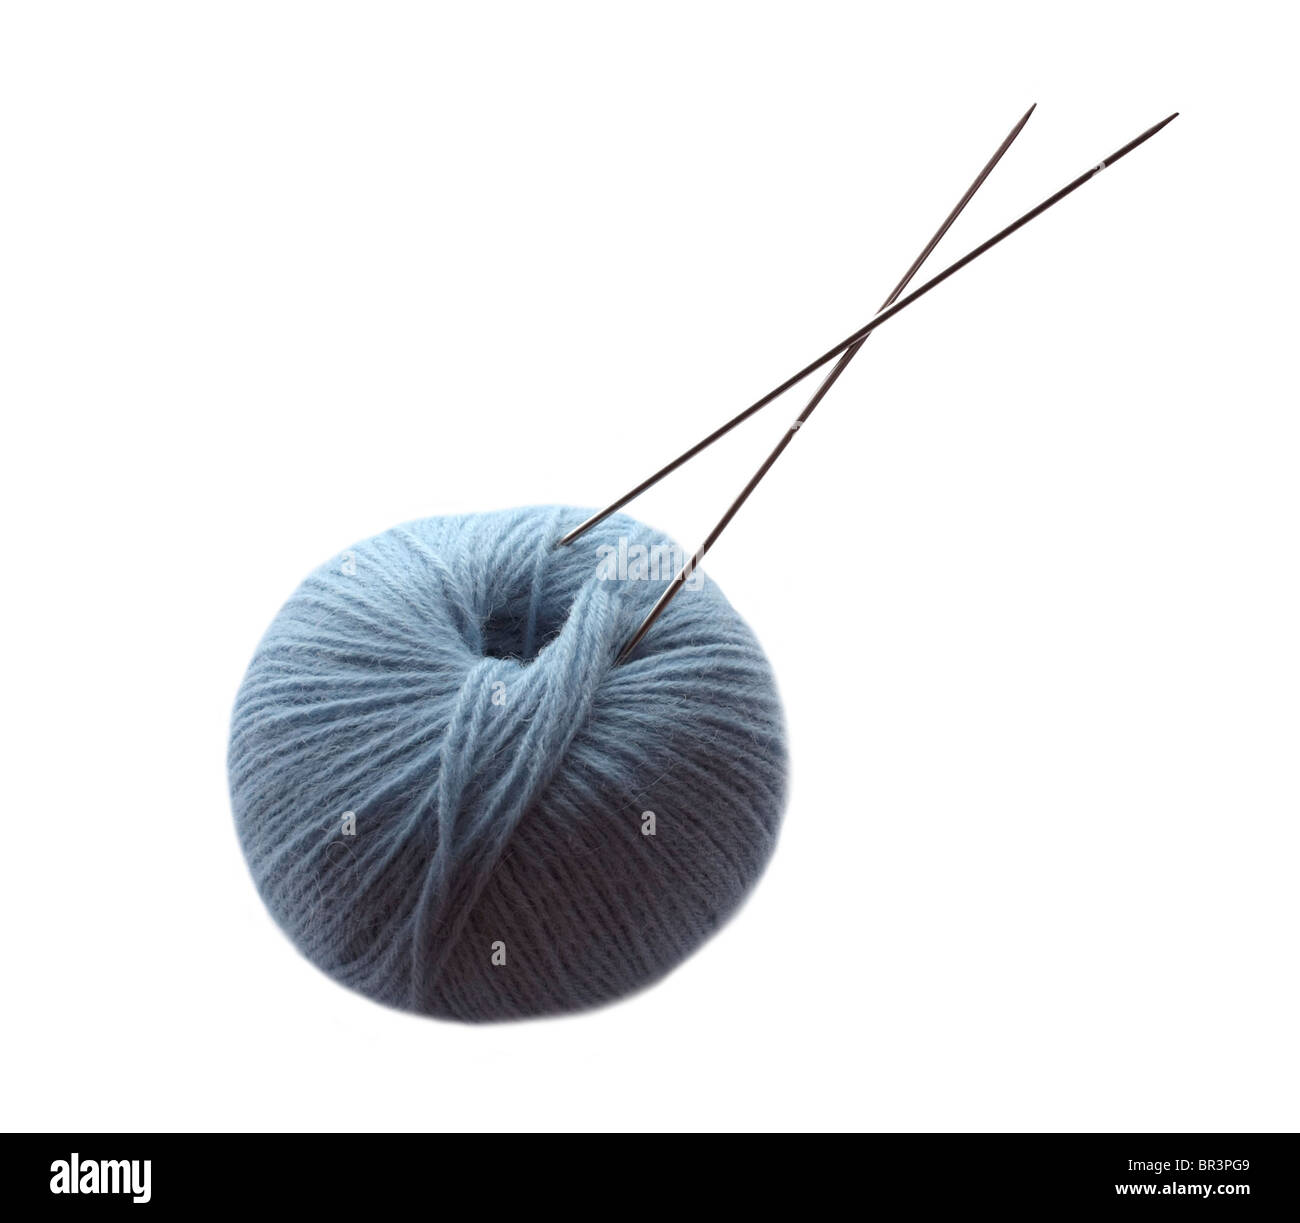 Bola de lana con agujas de tejer. Aislado sobre un fondo blanco. Foto de stock